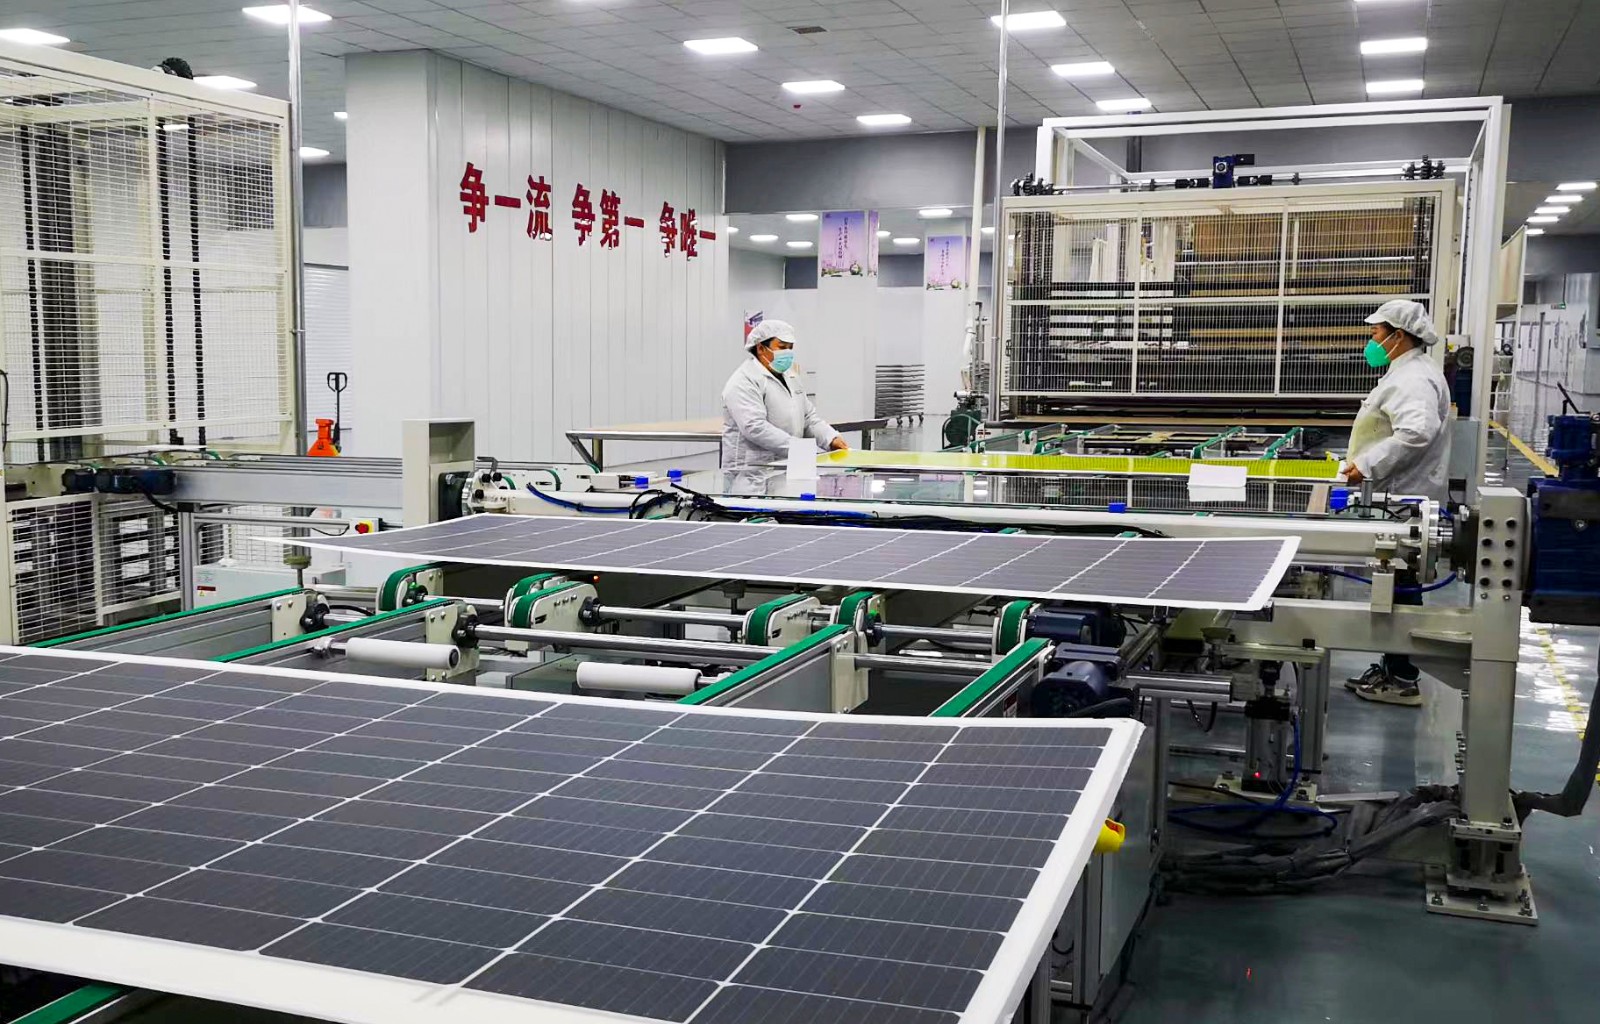 中科泰阳光电科技有限公司轻质高效晶硅太阳能电池组件生产车间  吕光社 报道